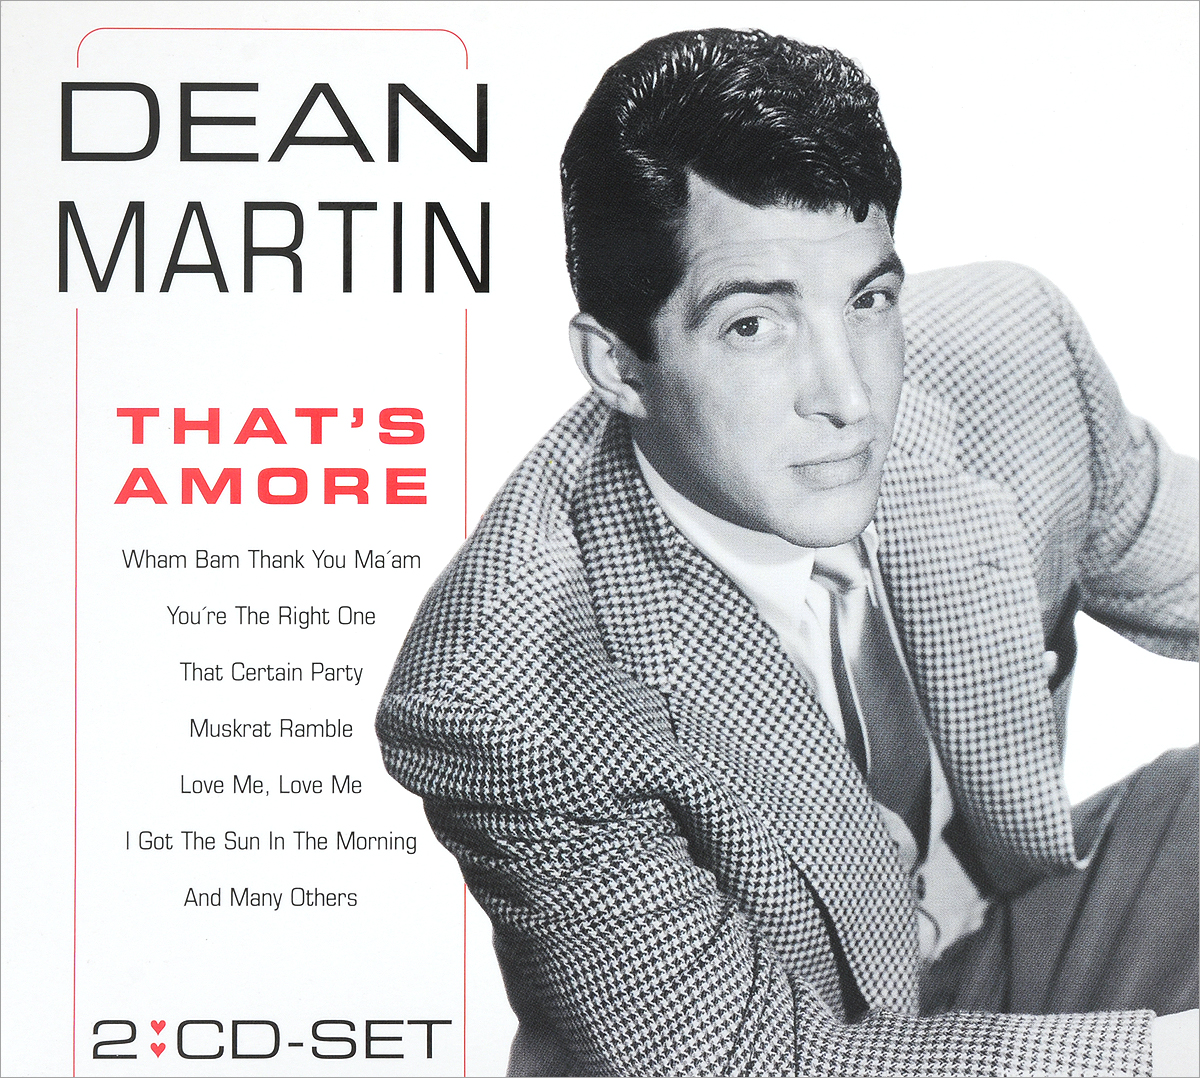 Wham bam. Harana Dean Martin. Dean Martin - that's Amore DVD Covers.